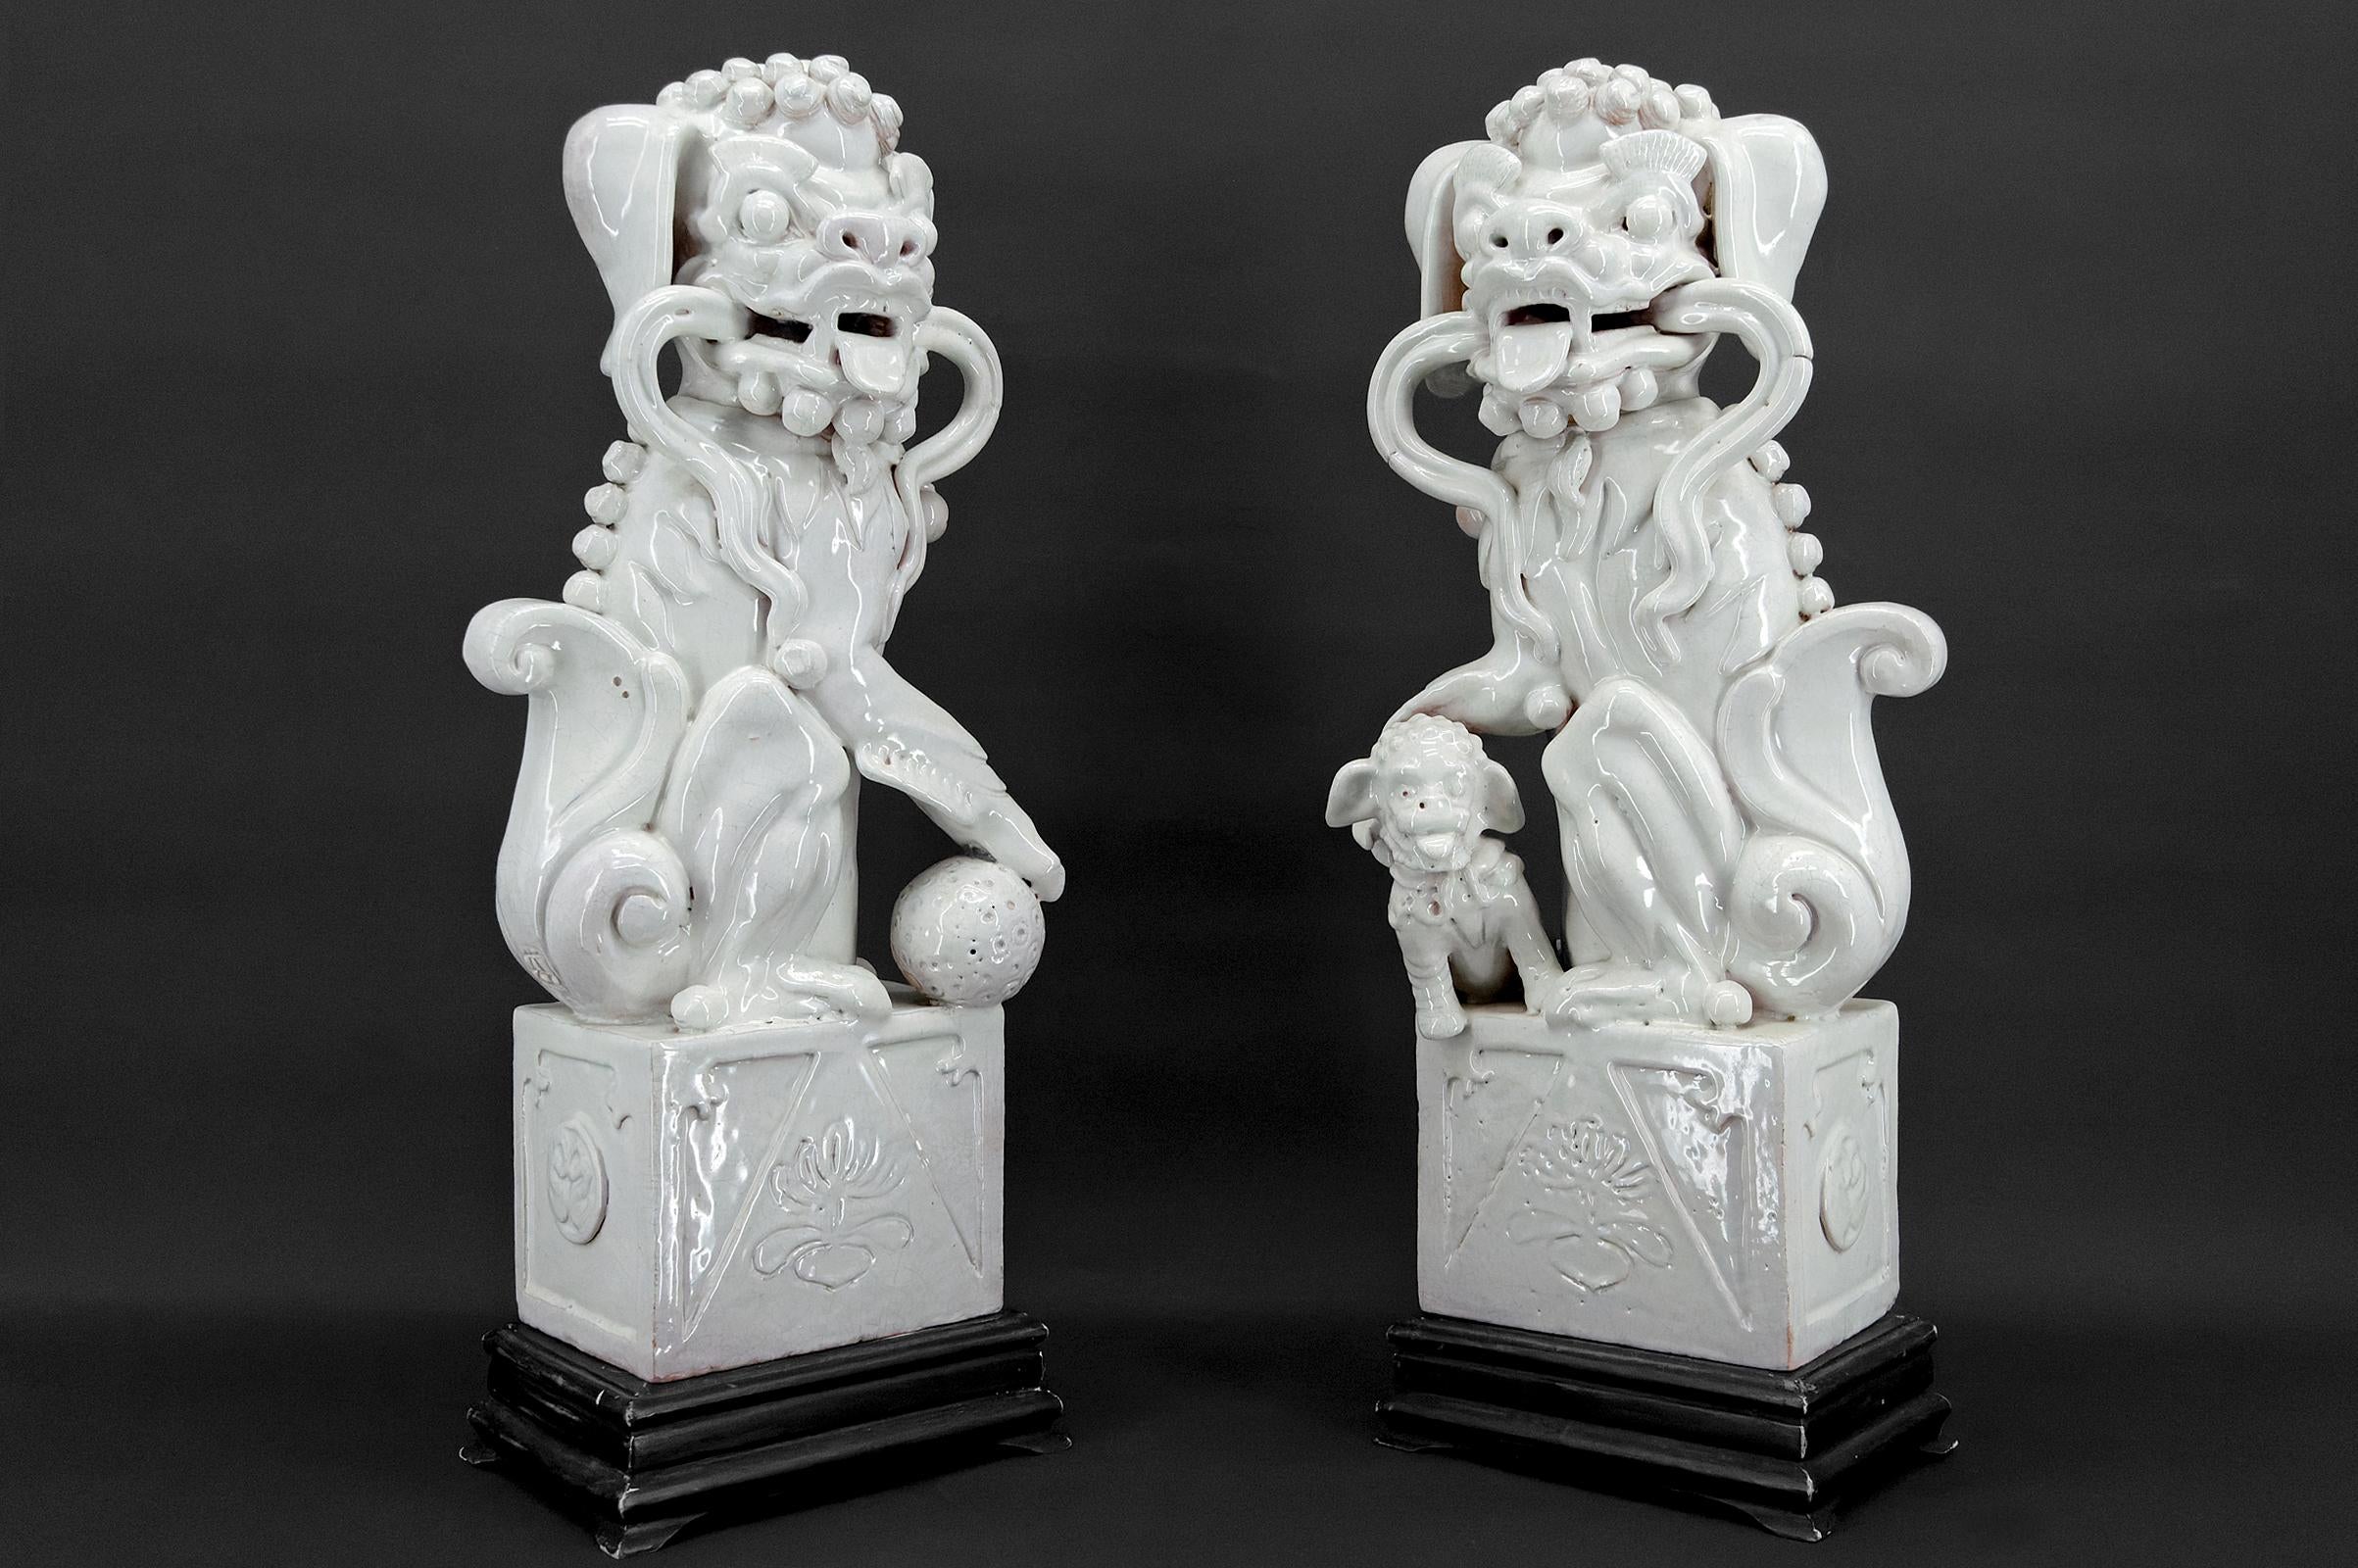 Seltenes Paar wichtiger Wächterlöwen / Fo Dogs / Shizi aus Keramik mit rissiger weißer Emaille.

China, Qing-Dynastie, 19. Jahrhundert


Jeder Fo Dog  / Shizi sitzt auf einem hölzernen Sockel, das Maul mit schönem Gesichtsausdruck geöffnet, eine